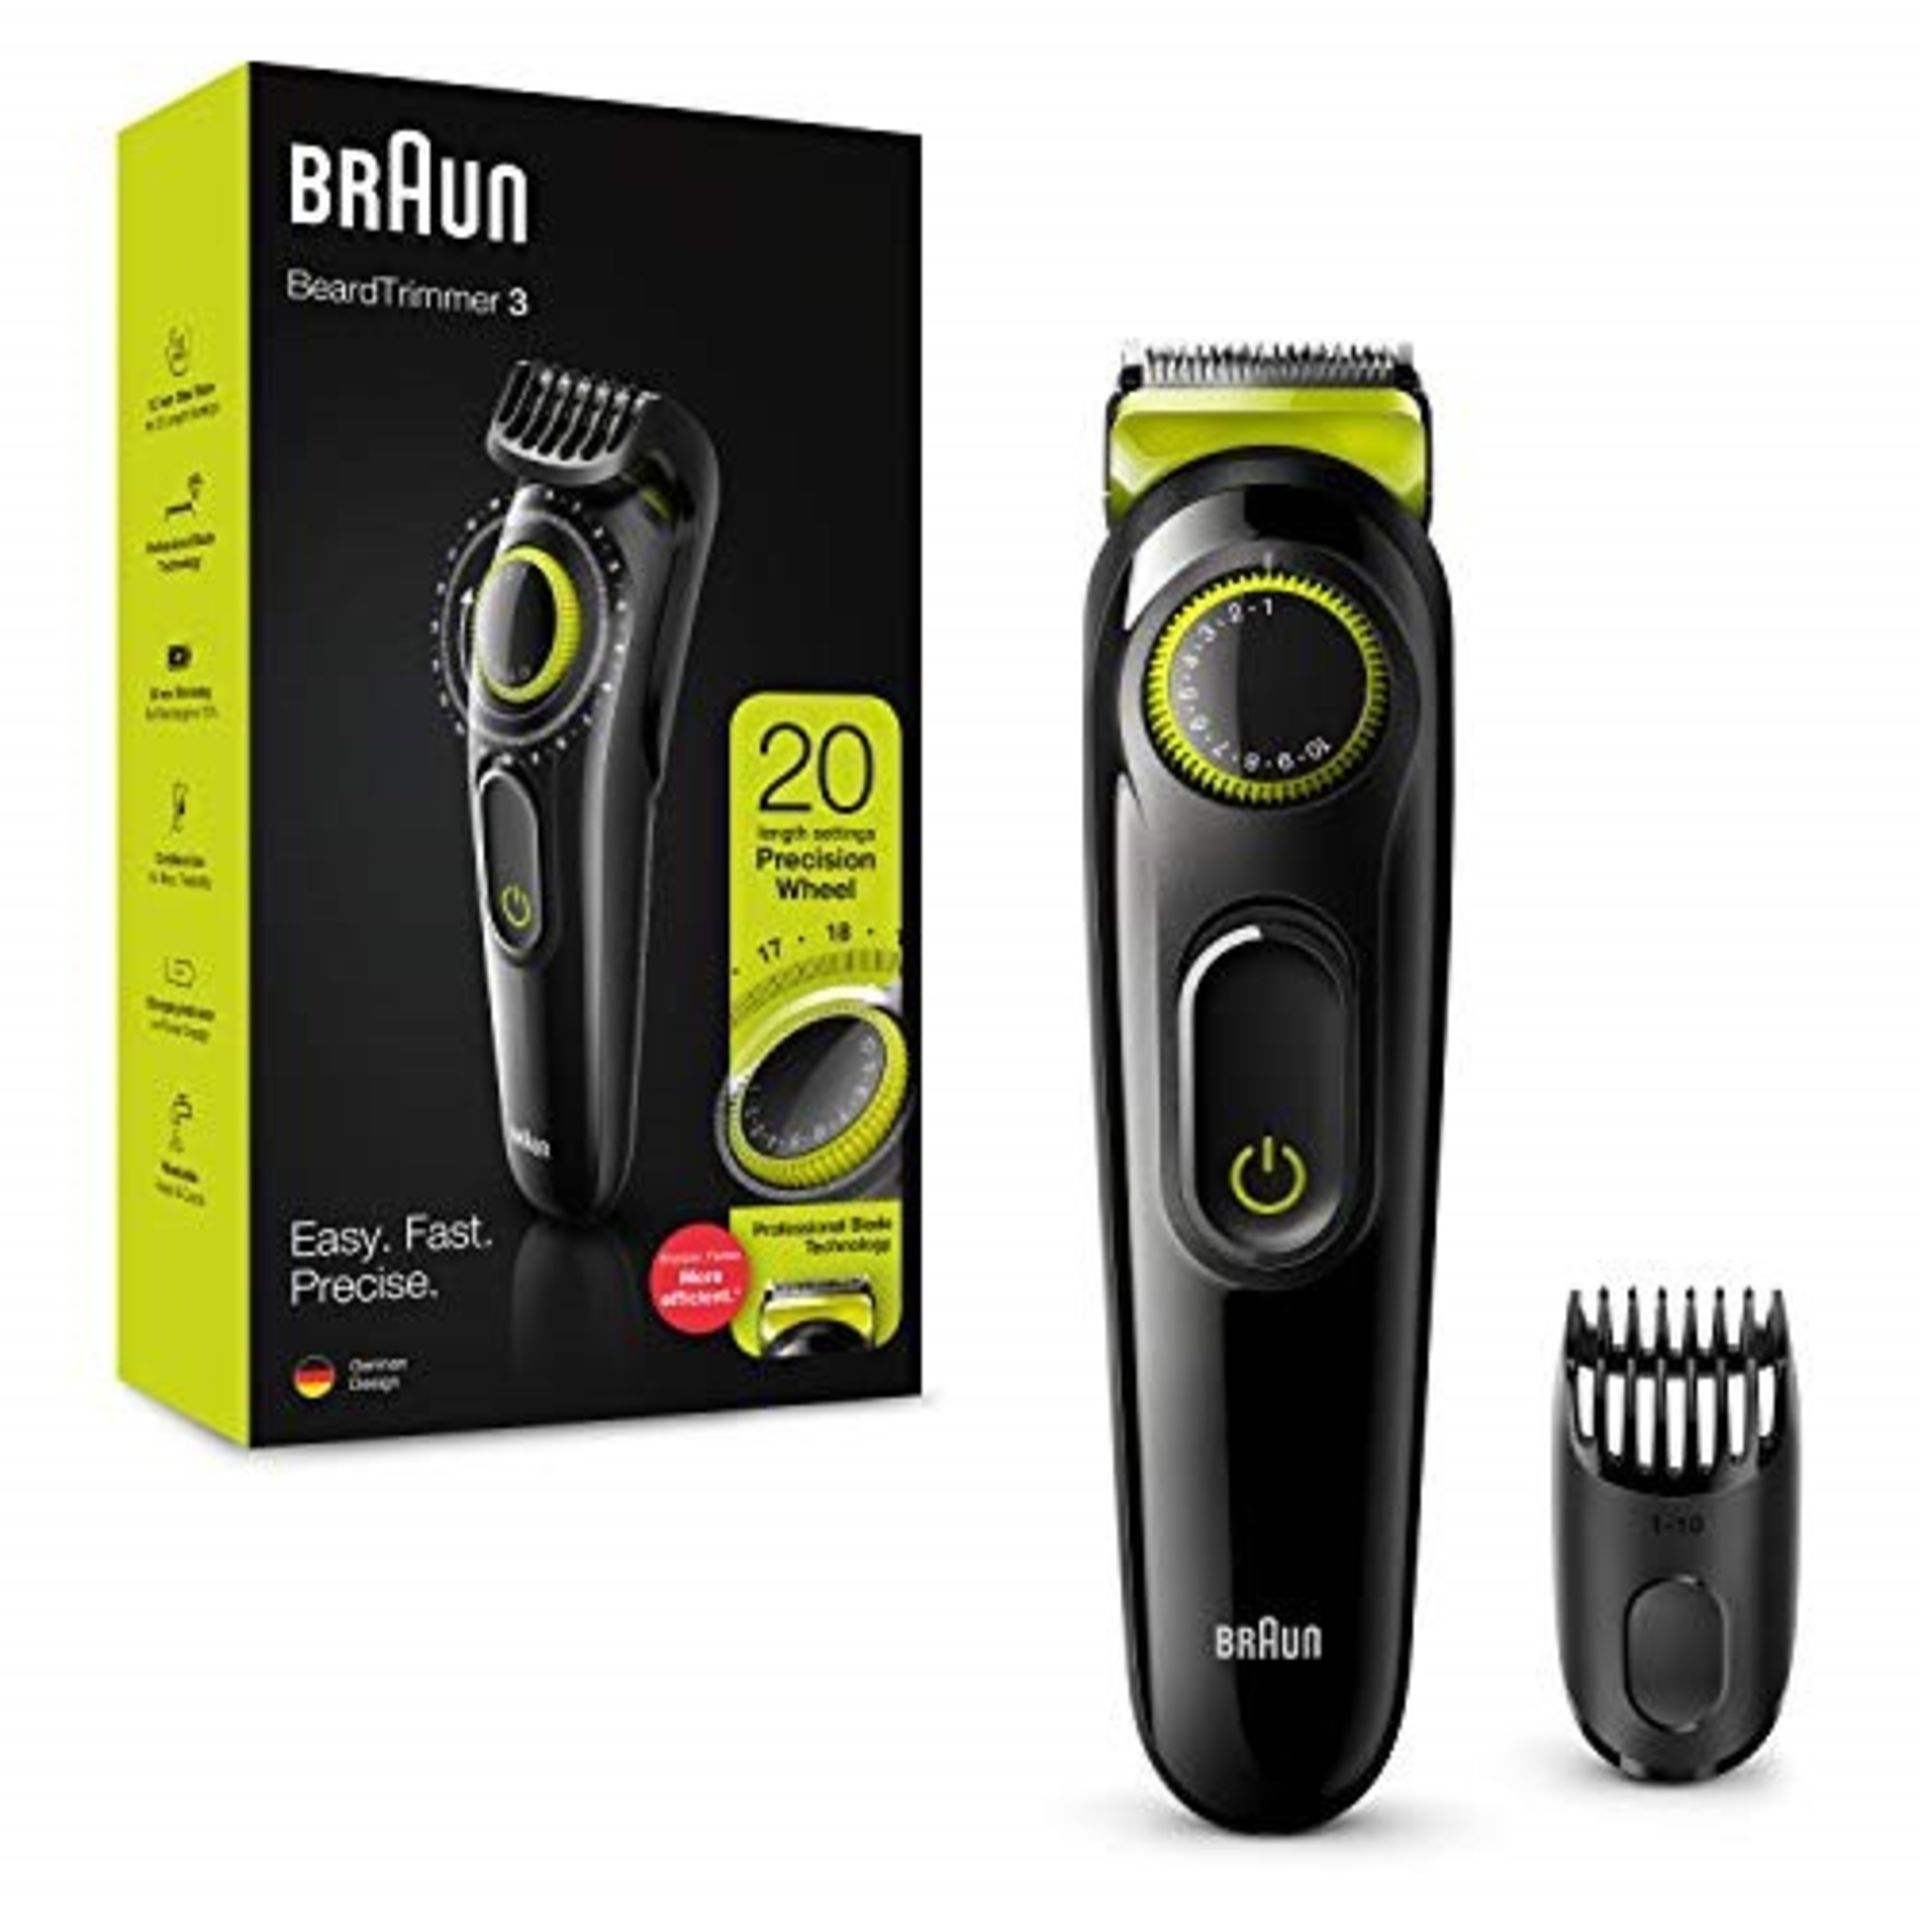 Braun Beard Trimmer BT3221 and Hair Clipper for Men, Lifetime Sharp Blades, 20 Length